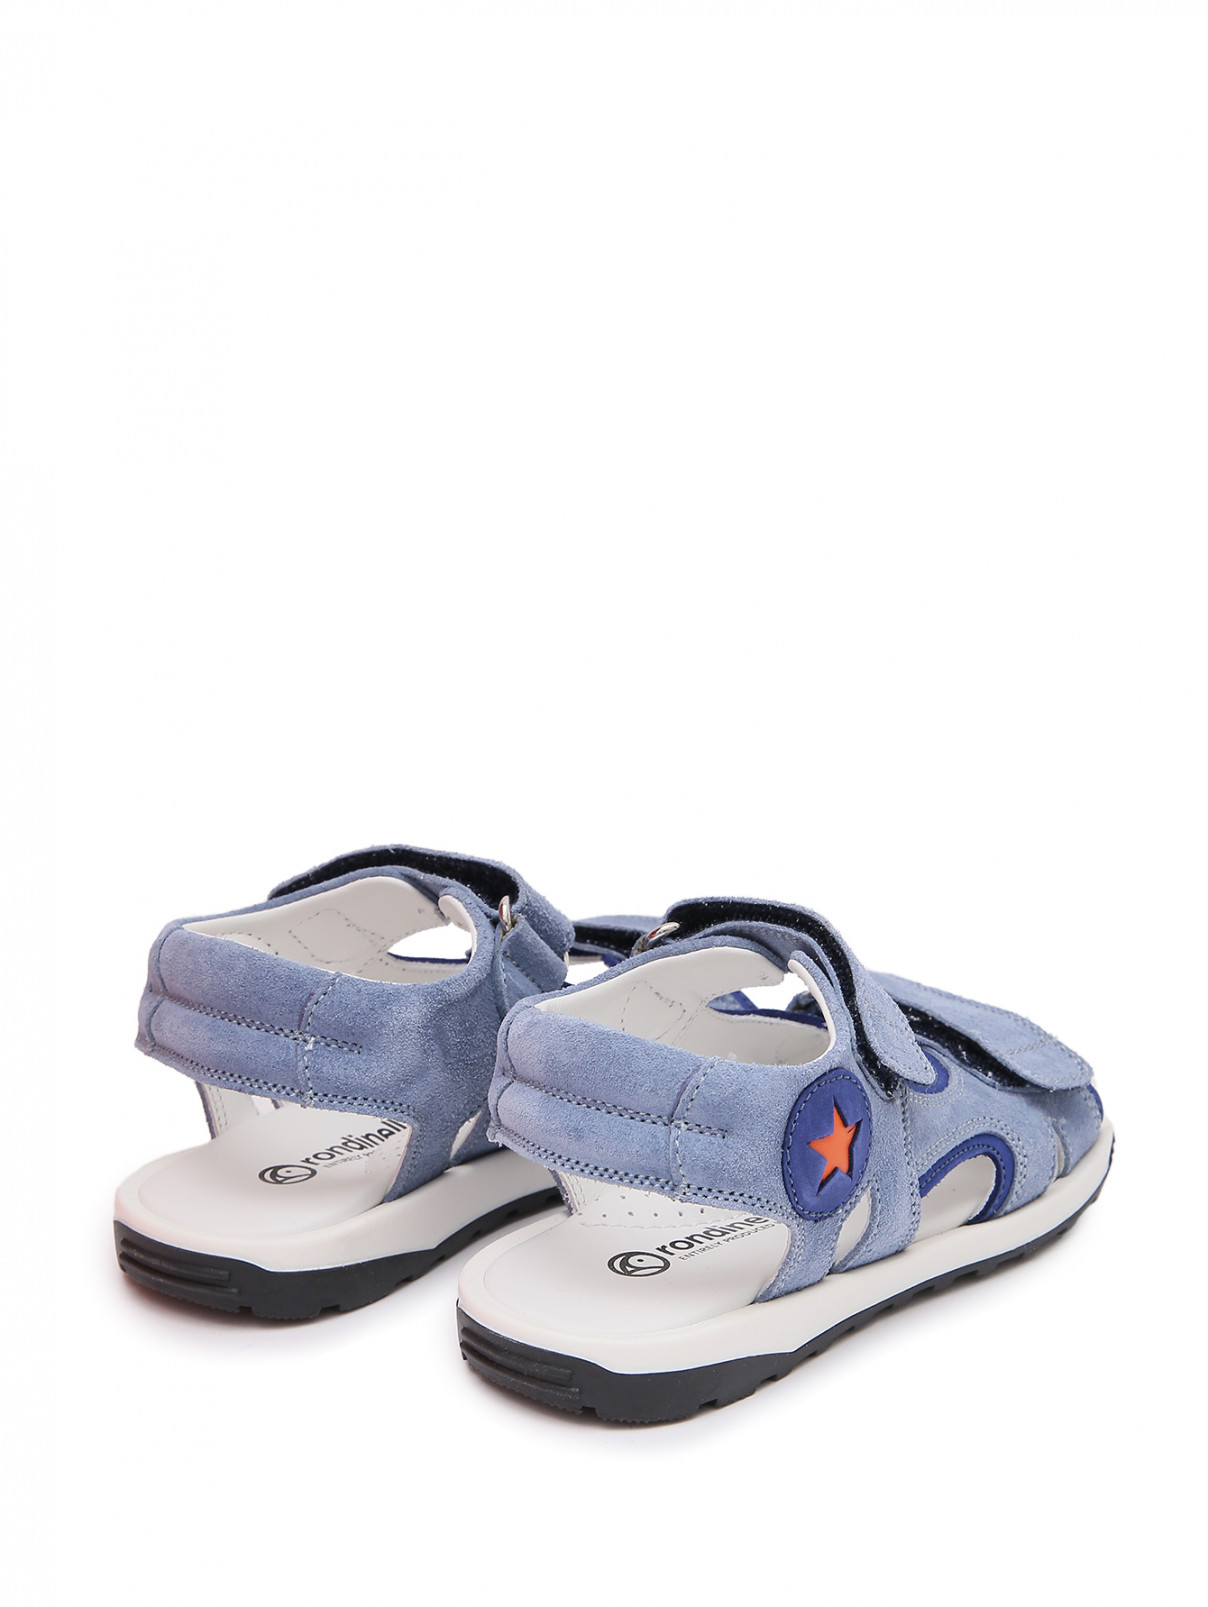 Замшевые сандалии на липучках Rondinella  –  Обтравка2  – Цвет:  Синий